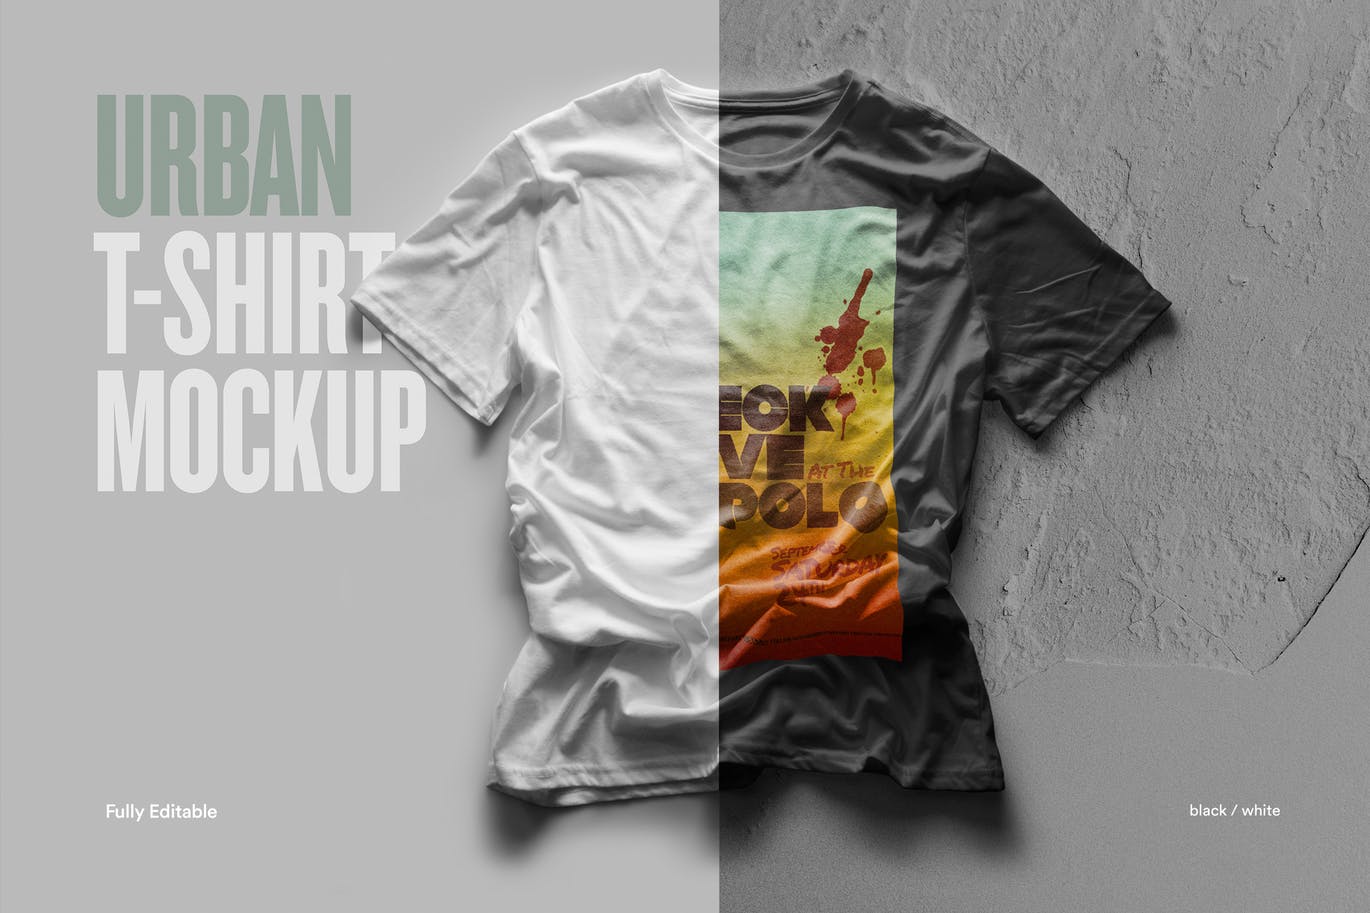 都市风格T恤印花图案设计预览样机蚂蚁素材精选 Urban T-Shirt Mock-Up插图